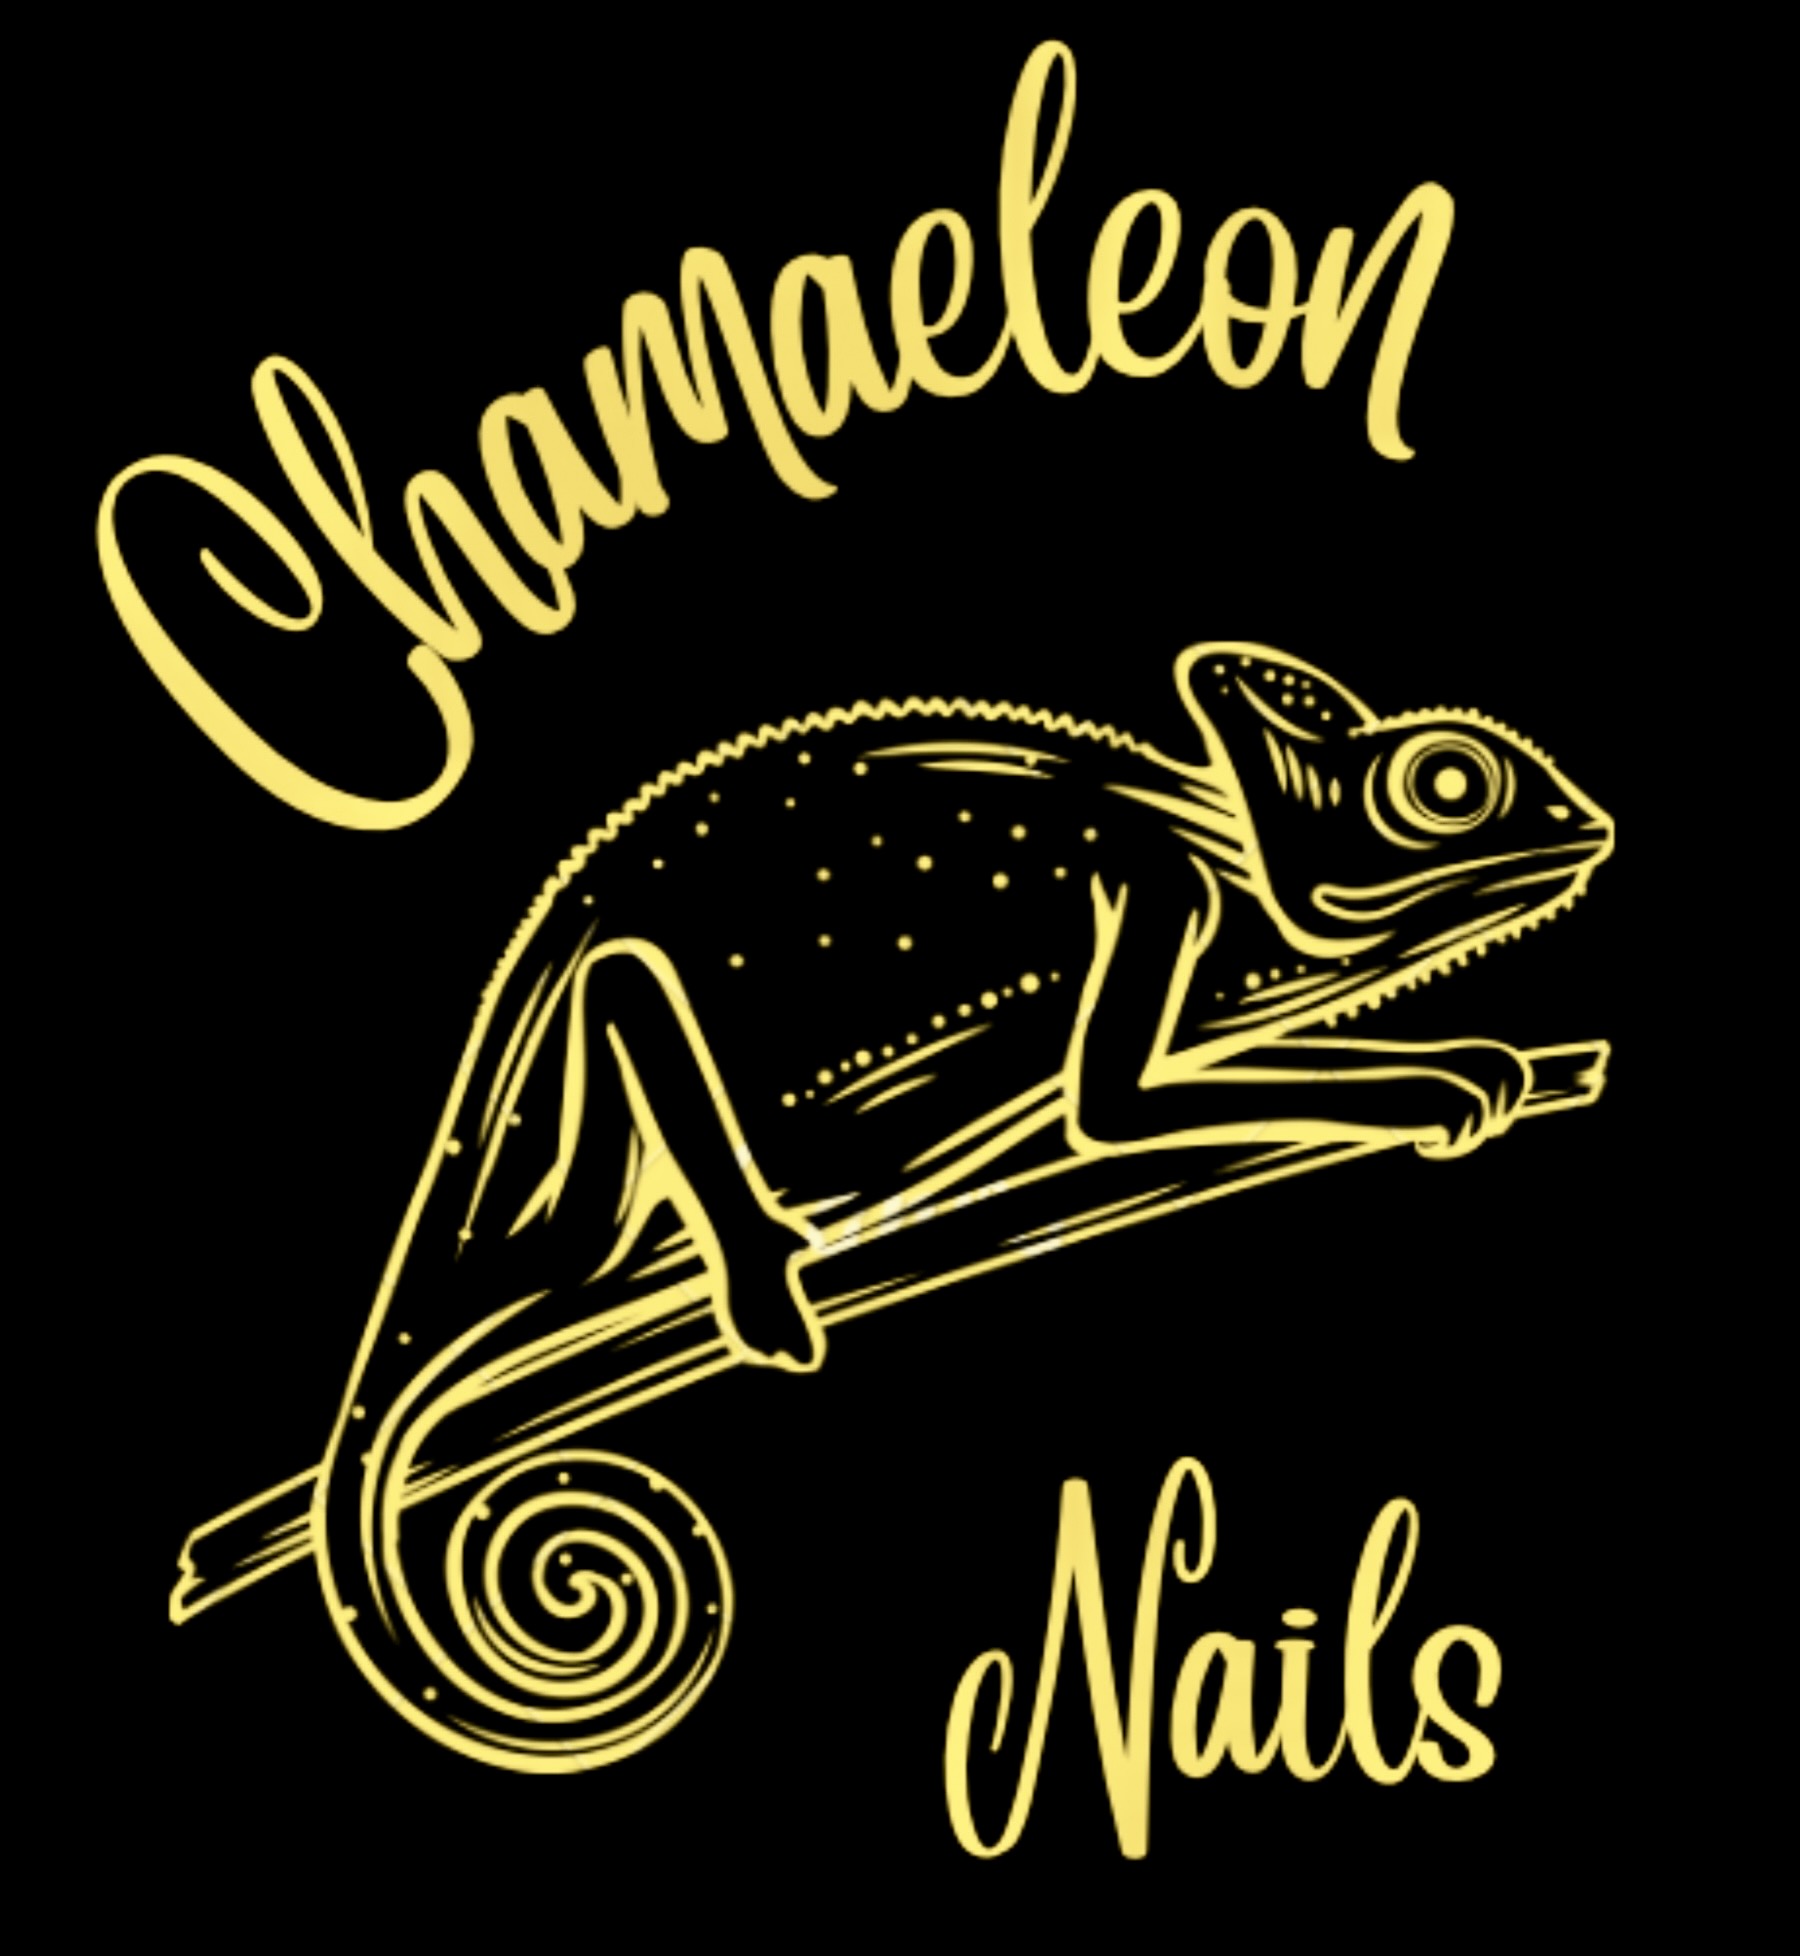 Chamaeleon Nails